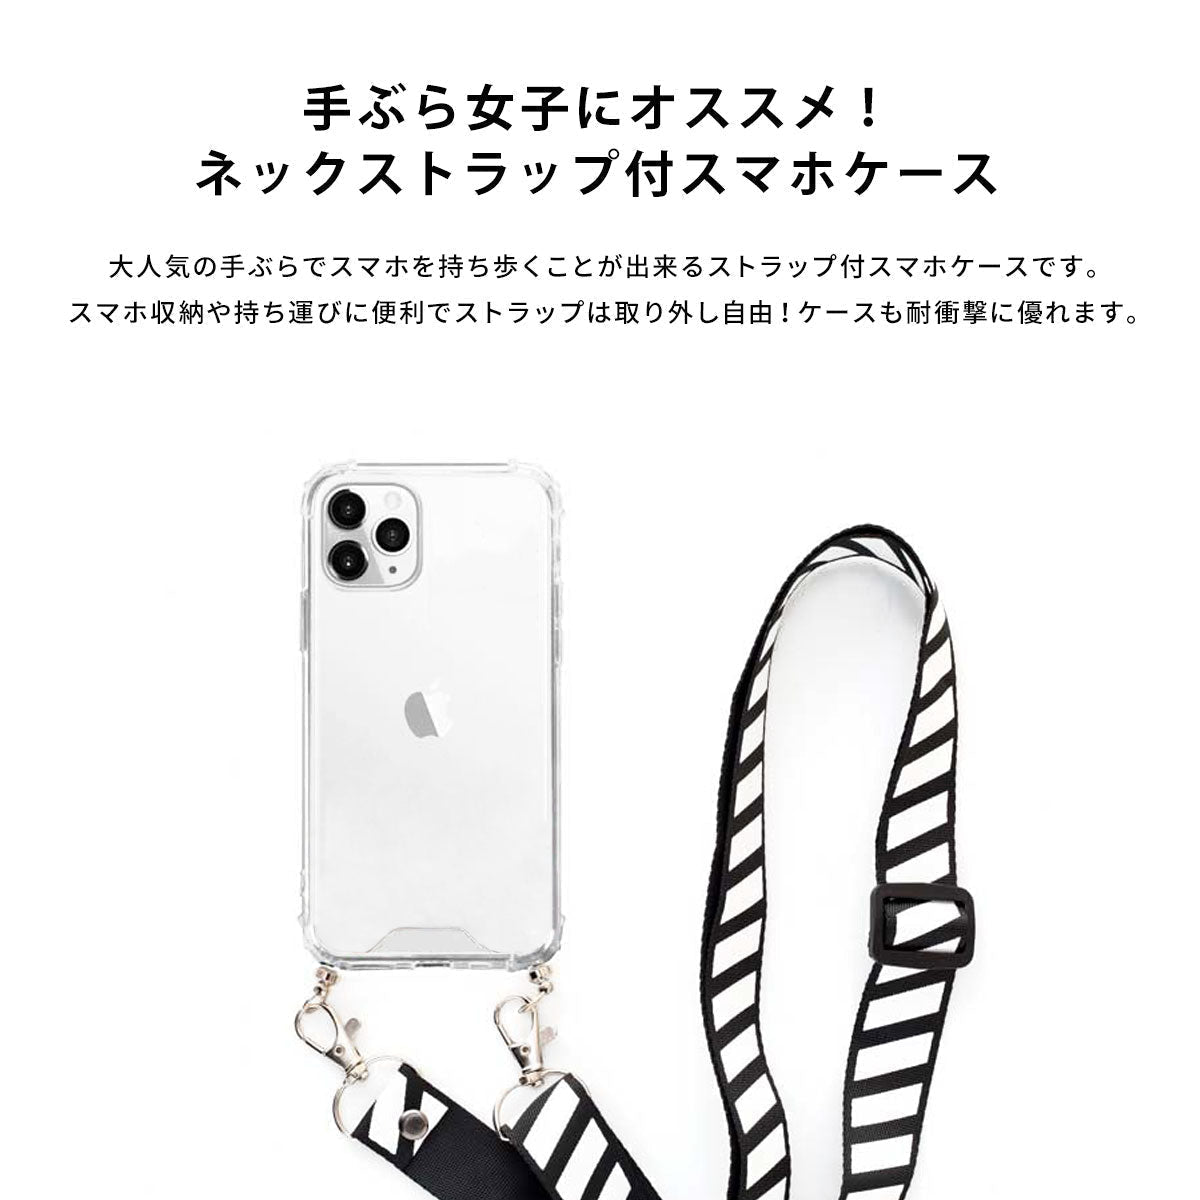 ネックストラップ スマホケース  iPhone13 iPone12 かわいい おしゃれ  ネックストラップ付き スイカ 名入れ